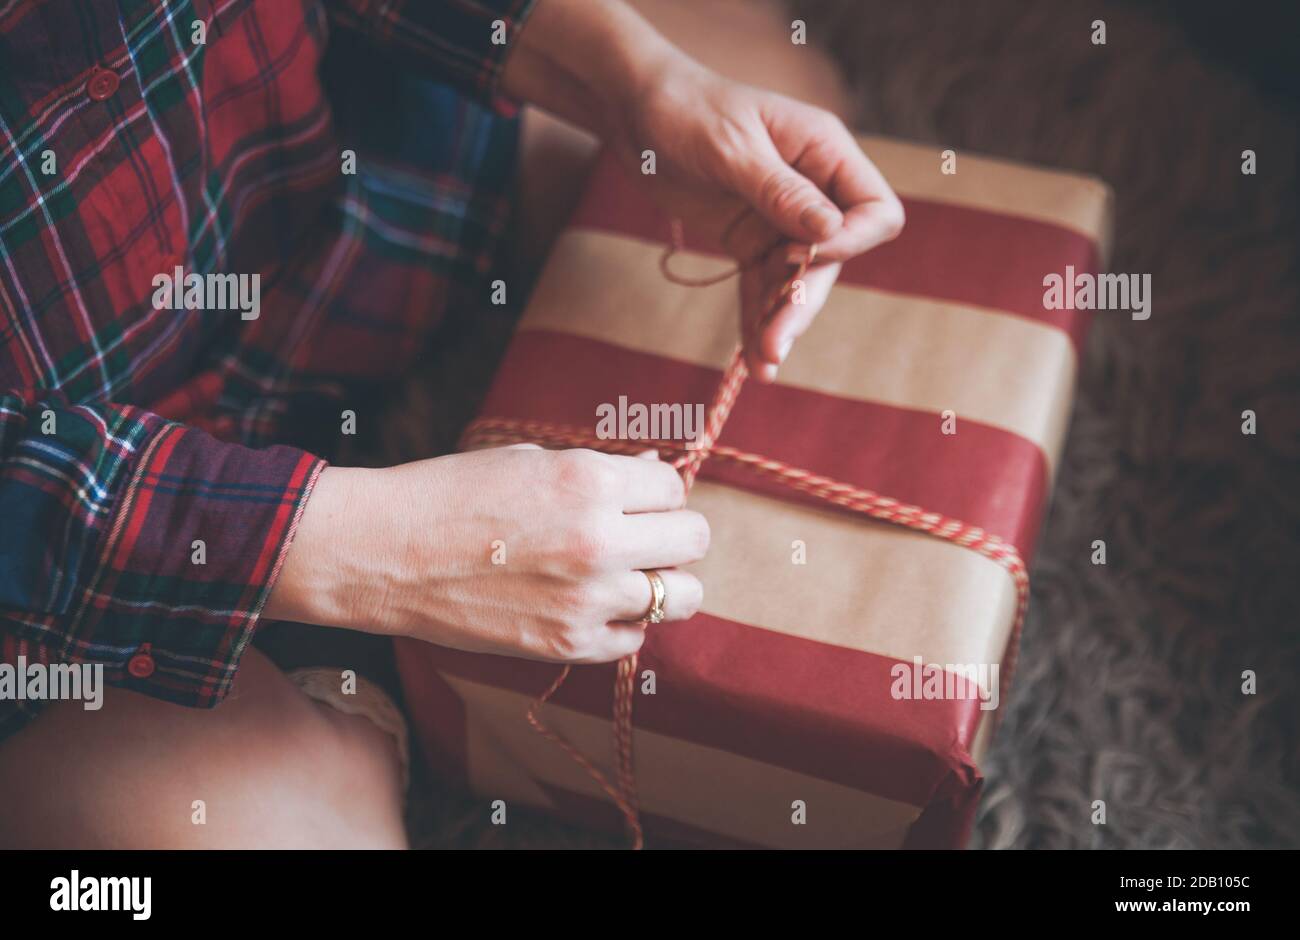 Frau Verpackung Weihnachtsgeschenke sitzen auf dem Boden in einem roten karierten Hemd. Rustikale Weihnachtsstimmung. Stockfoto